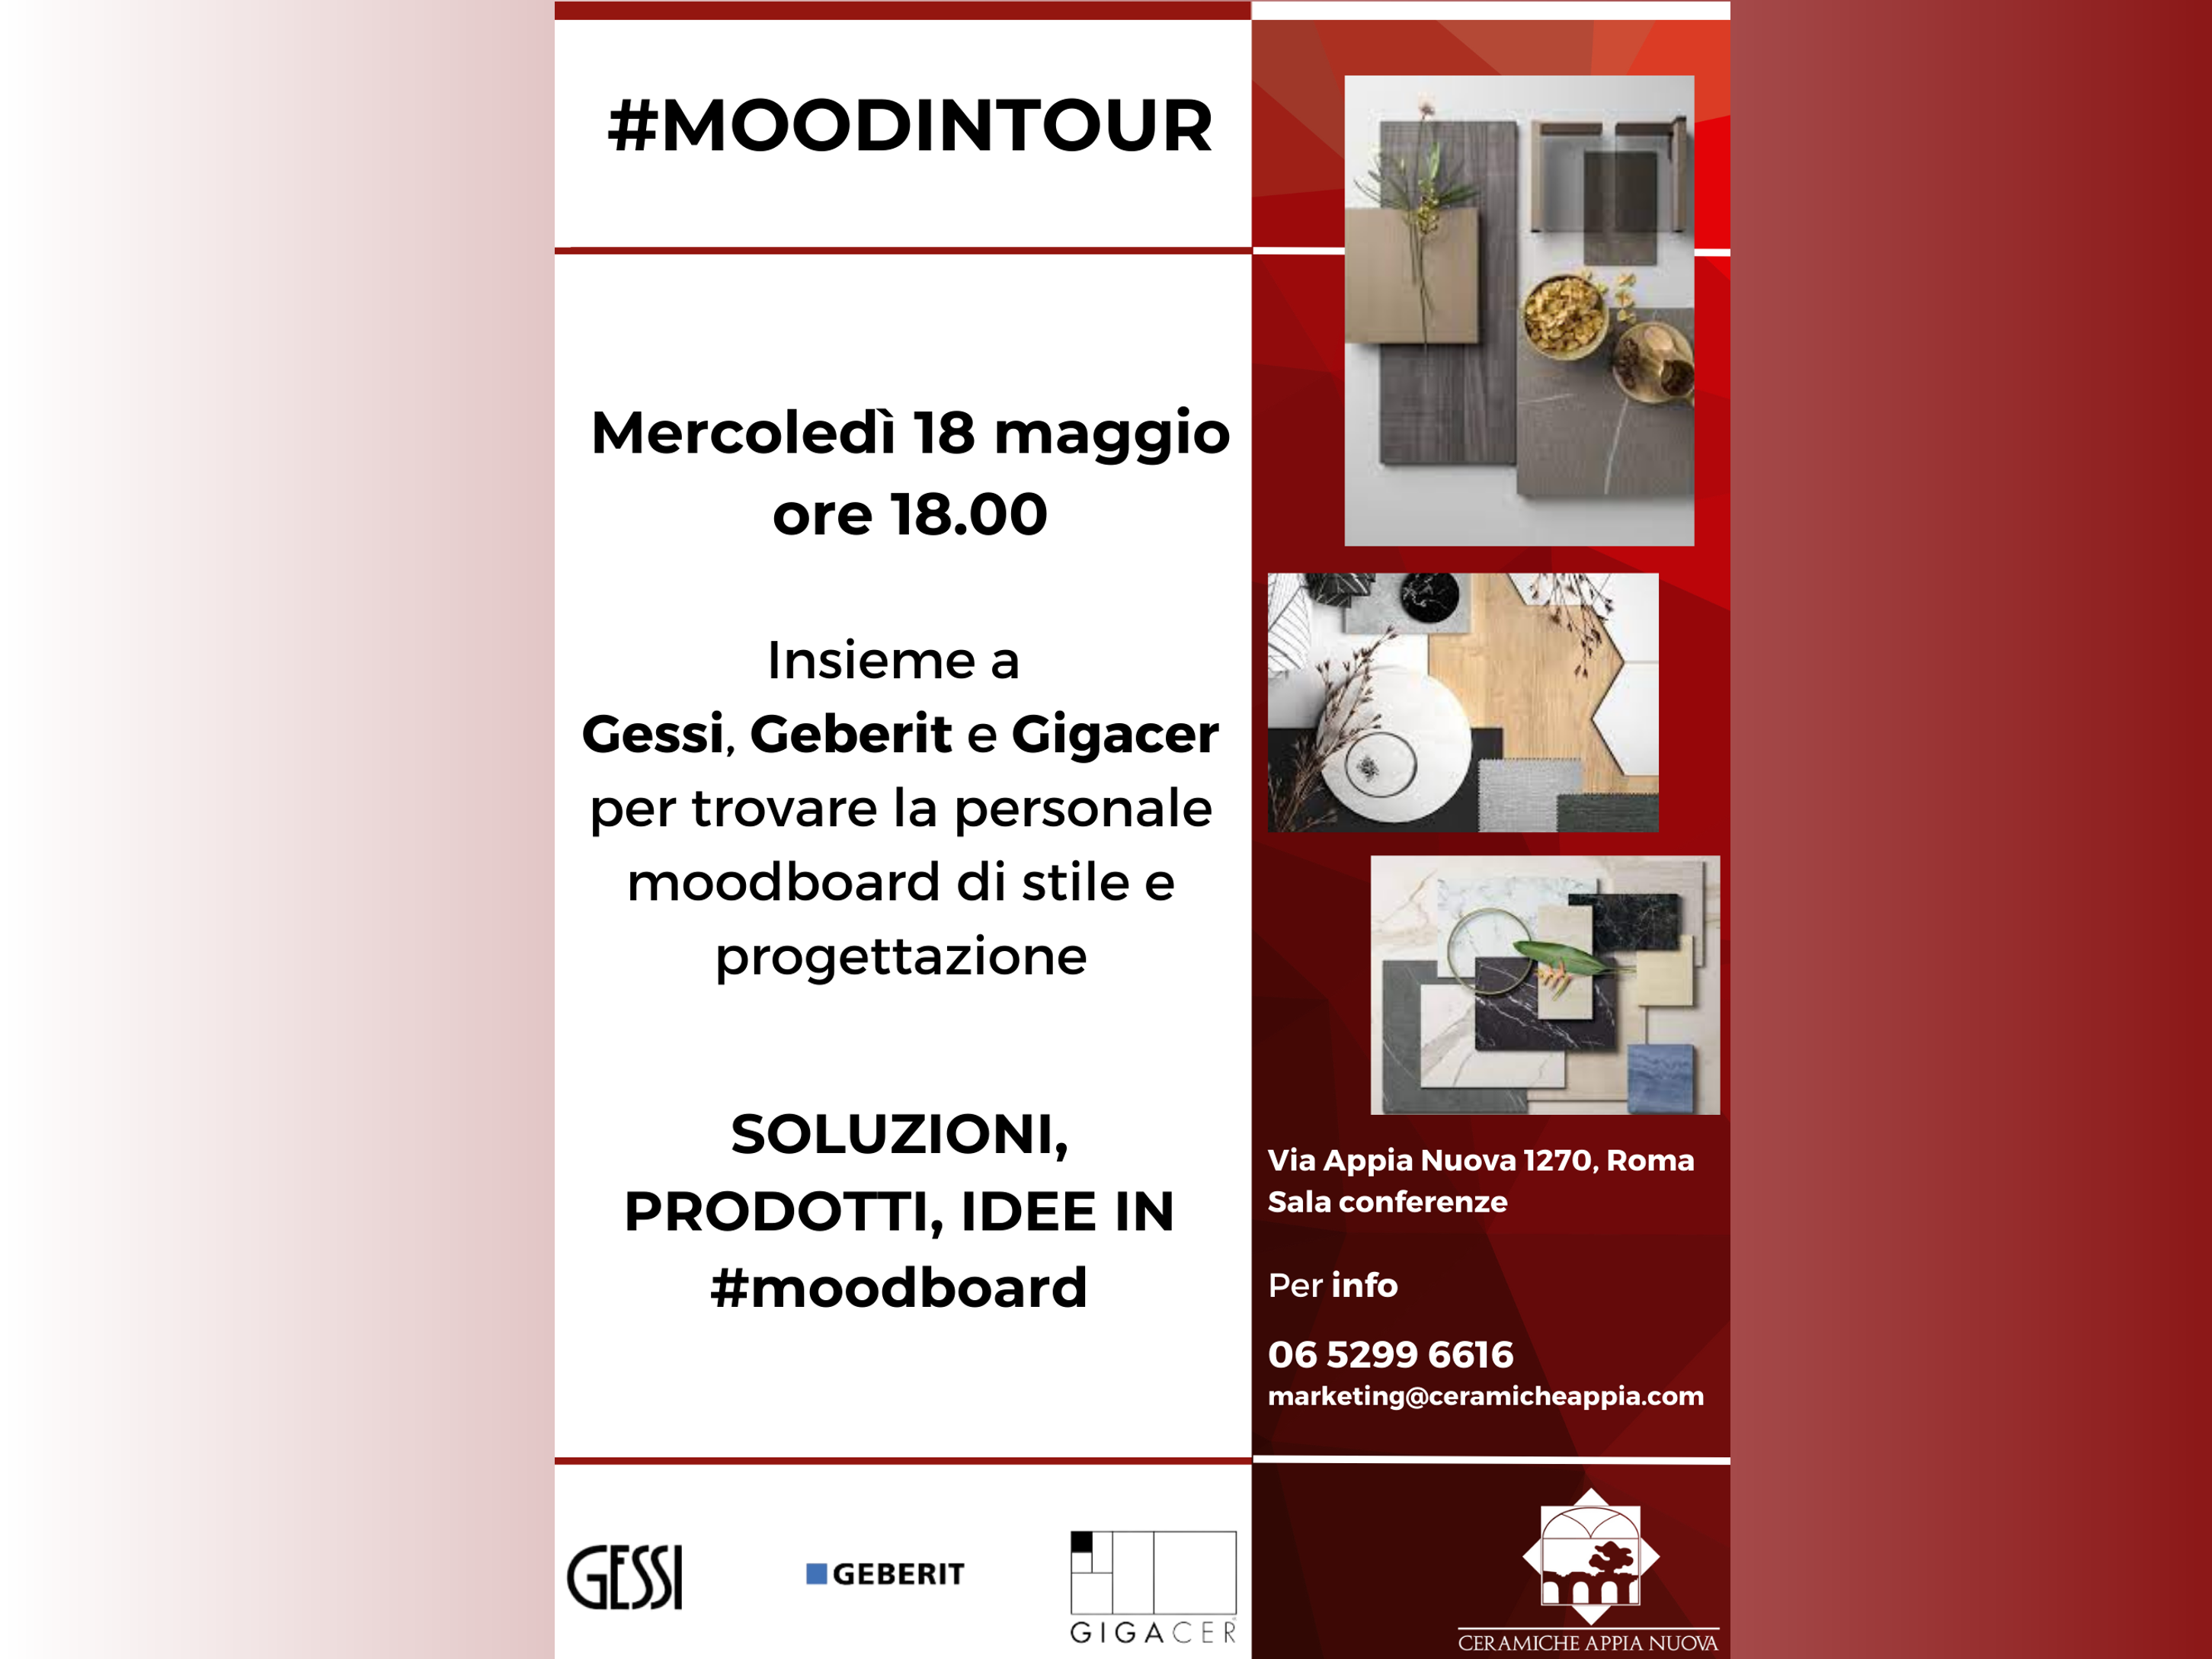 #moodintour, mercoledì 18 maggio, sala conferenze Ceramiche Appia Nuova